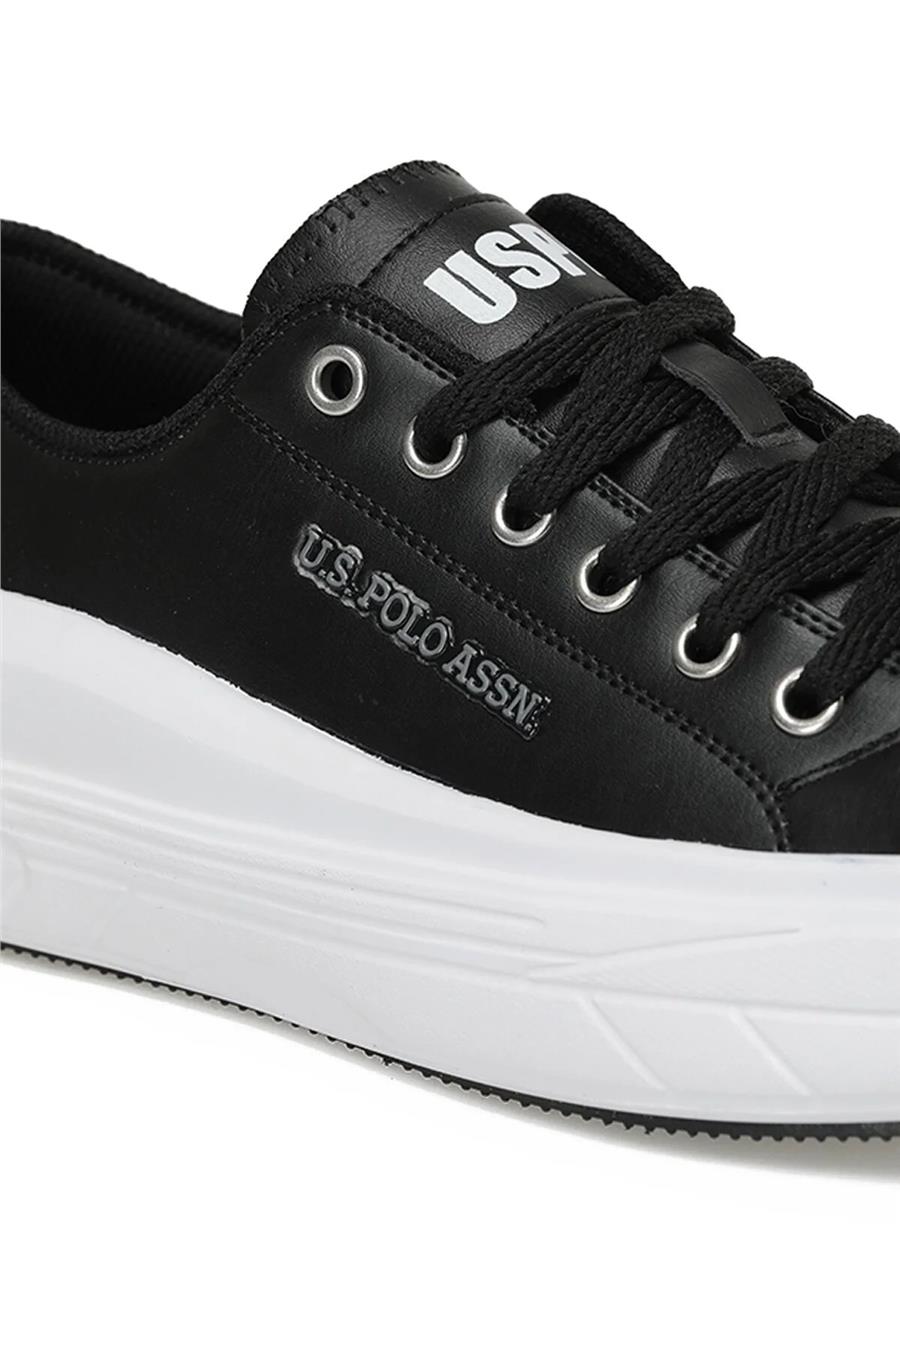 Us Polo Cleme Pu 3Pr Siyah Beyaz Kadın Sneaker Ayakkabı